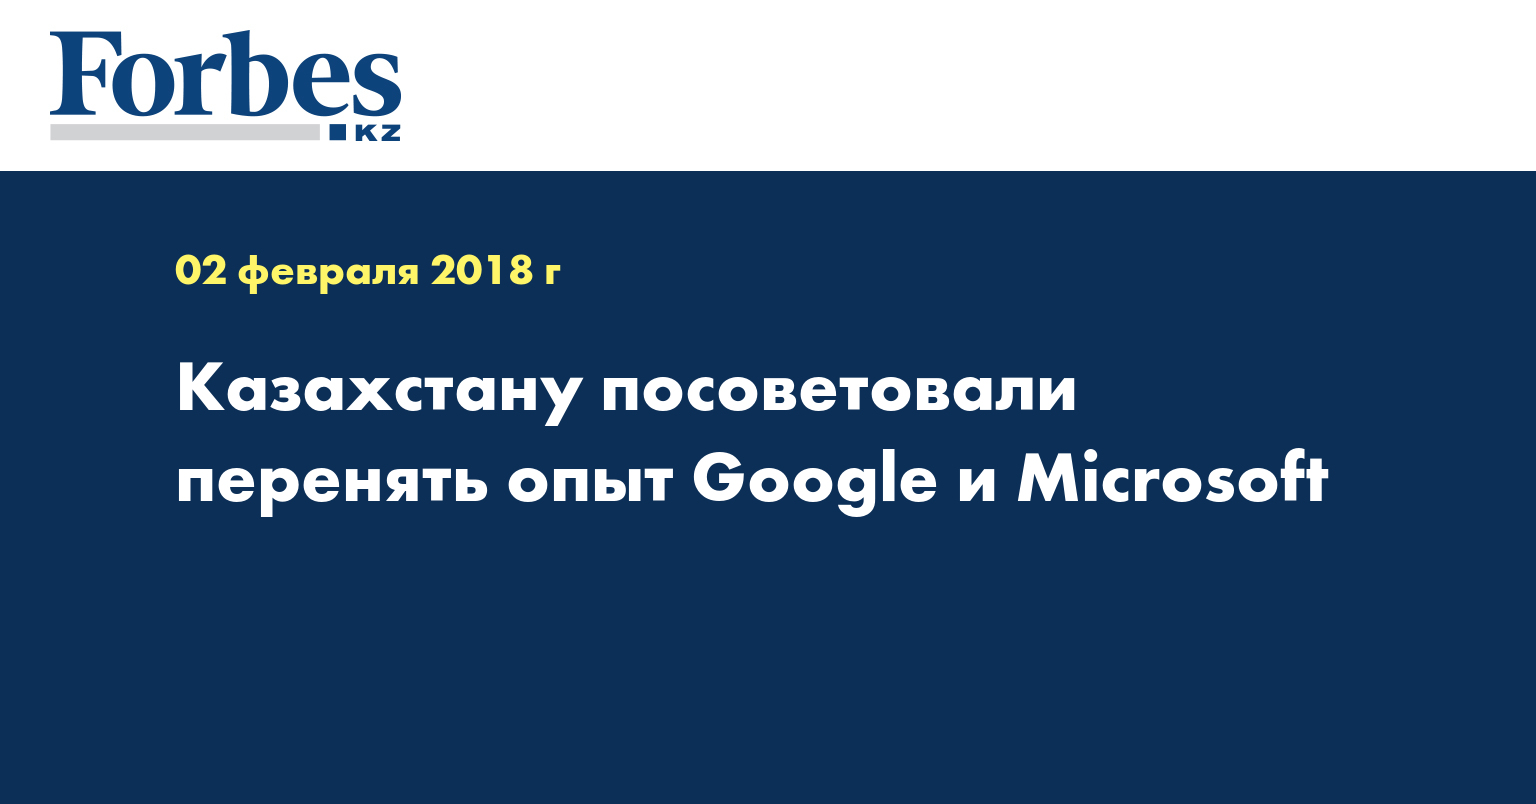 Казахстану посоветовали перенять опыт Google и Microsoft